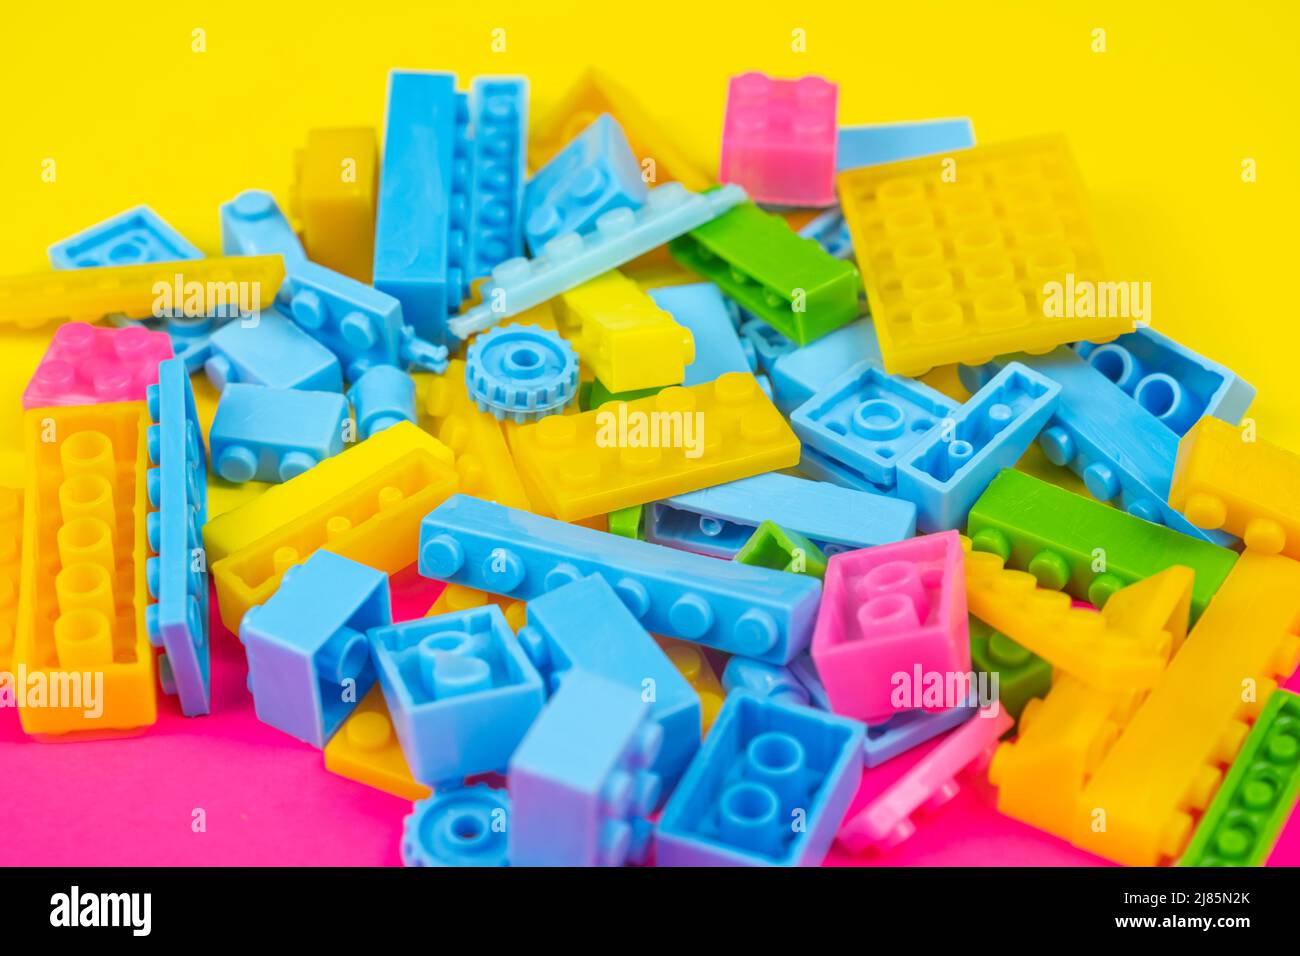 Jeu de blocs colorés, fond coloré, concept de jeu et d'apprentissage, jouets déversés pour enfants, blocs de construction, toile de fond jaune et rose, vue du dessus Banque D'Images